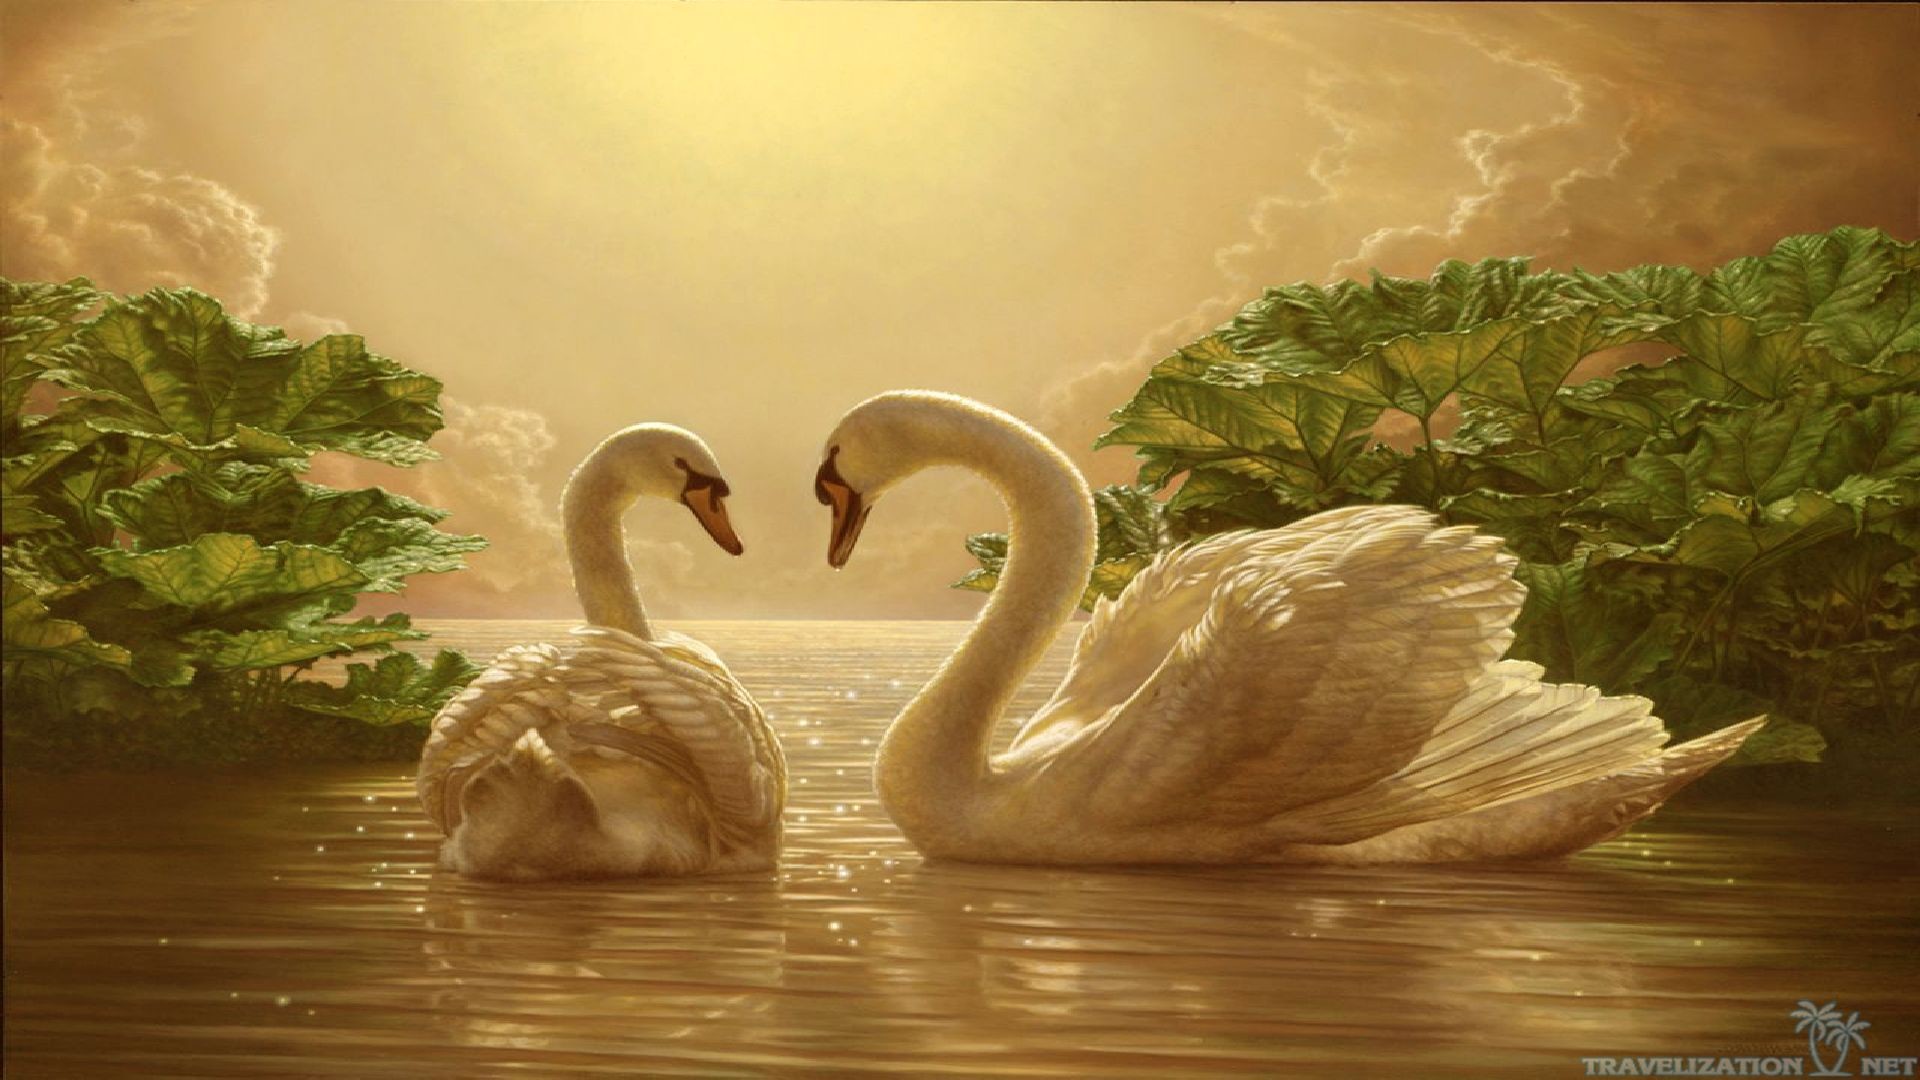 1920x1080 love swan desktop wallpaper download beautiful love swan wallpaper 